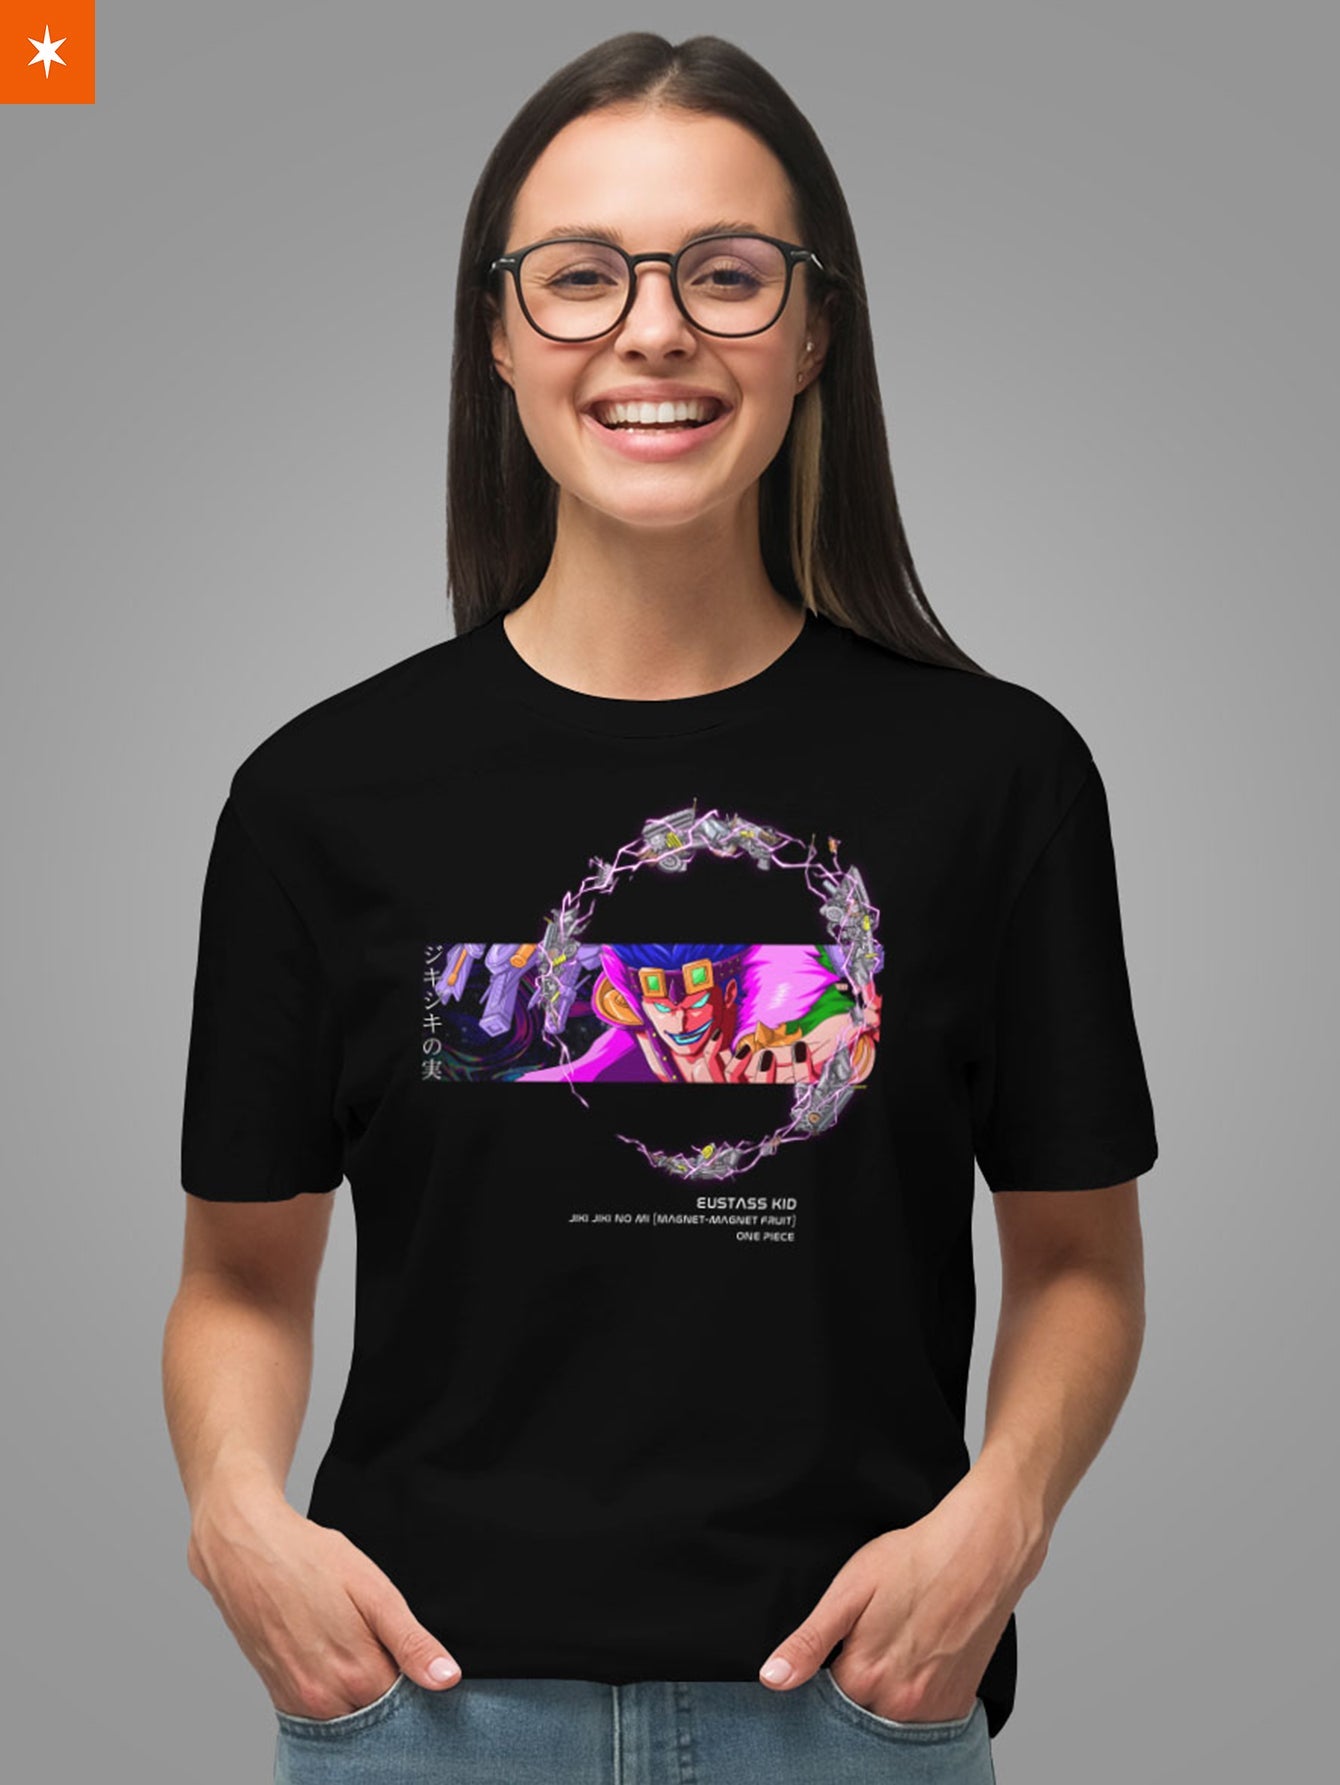 Fandomaniax - Magnet Psych Unisex T-Shirt